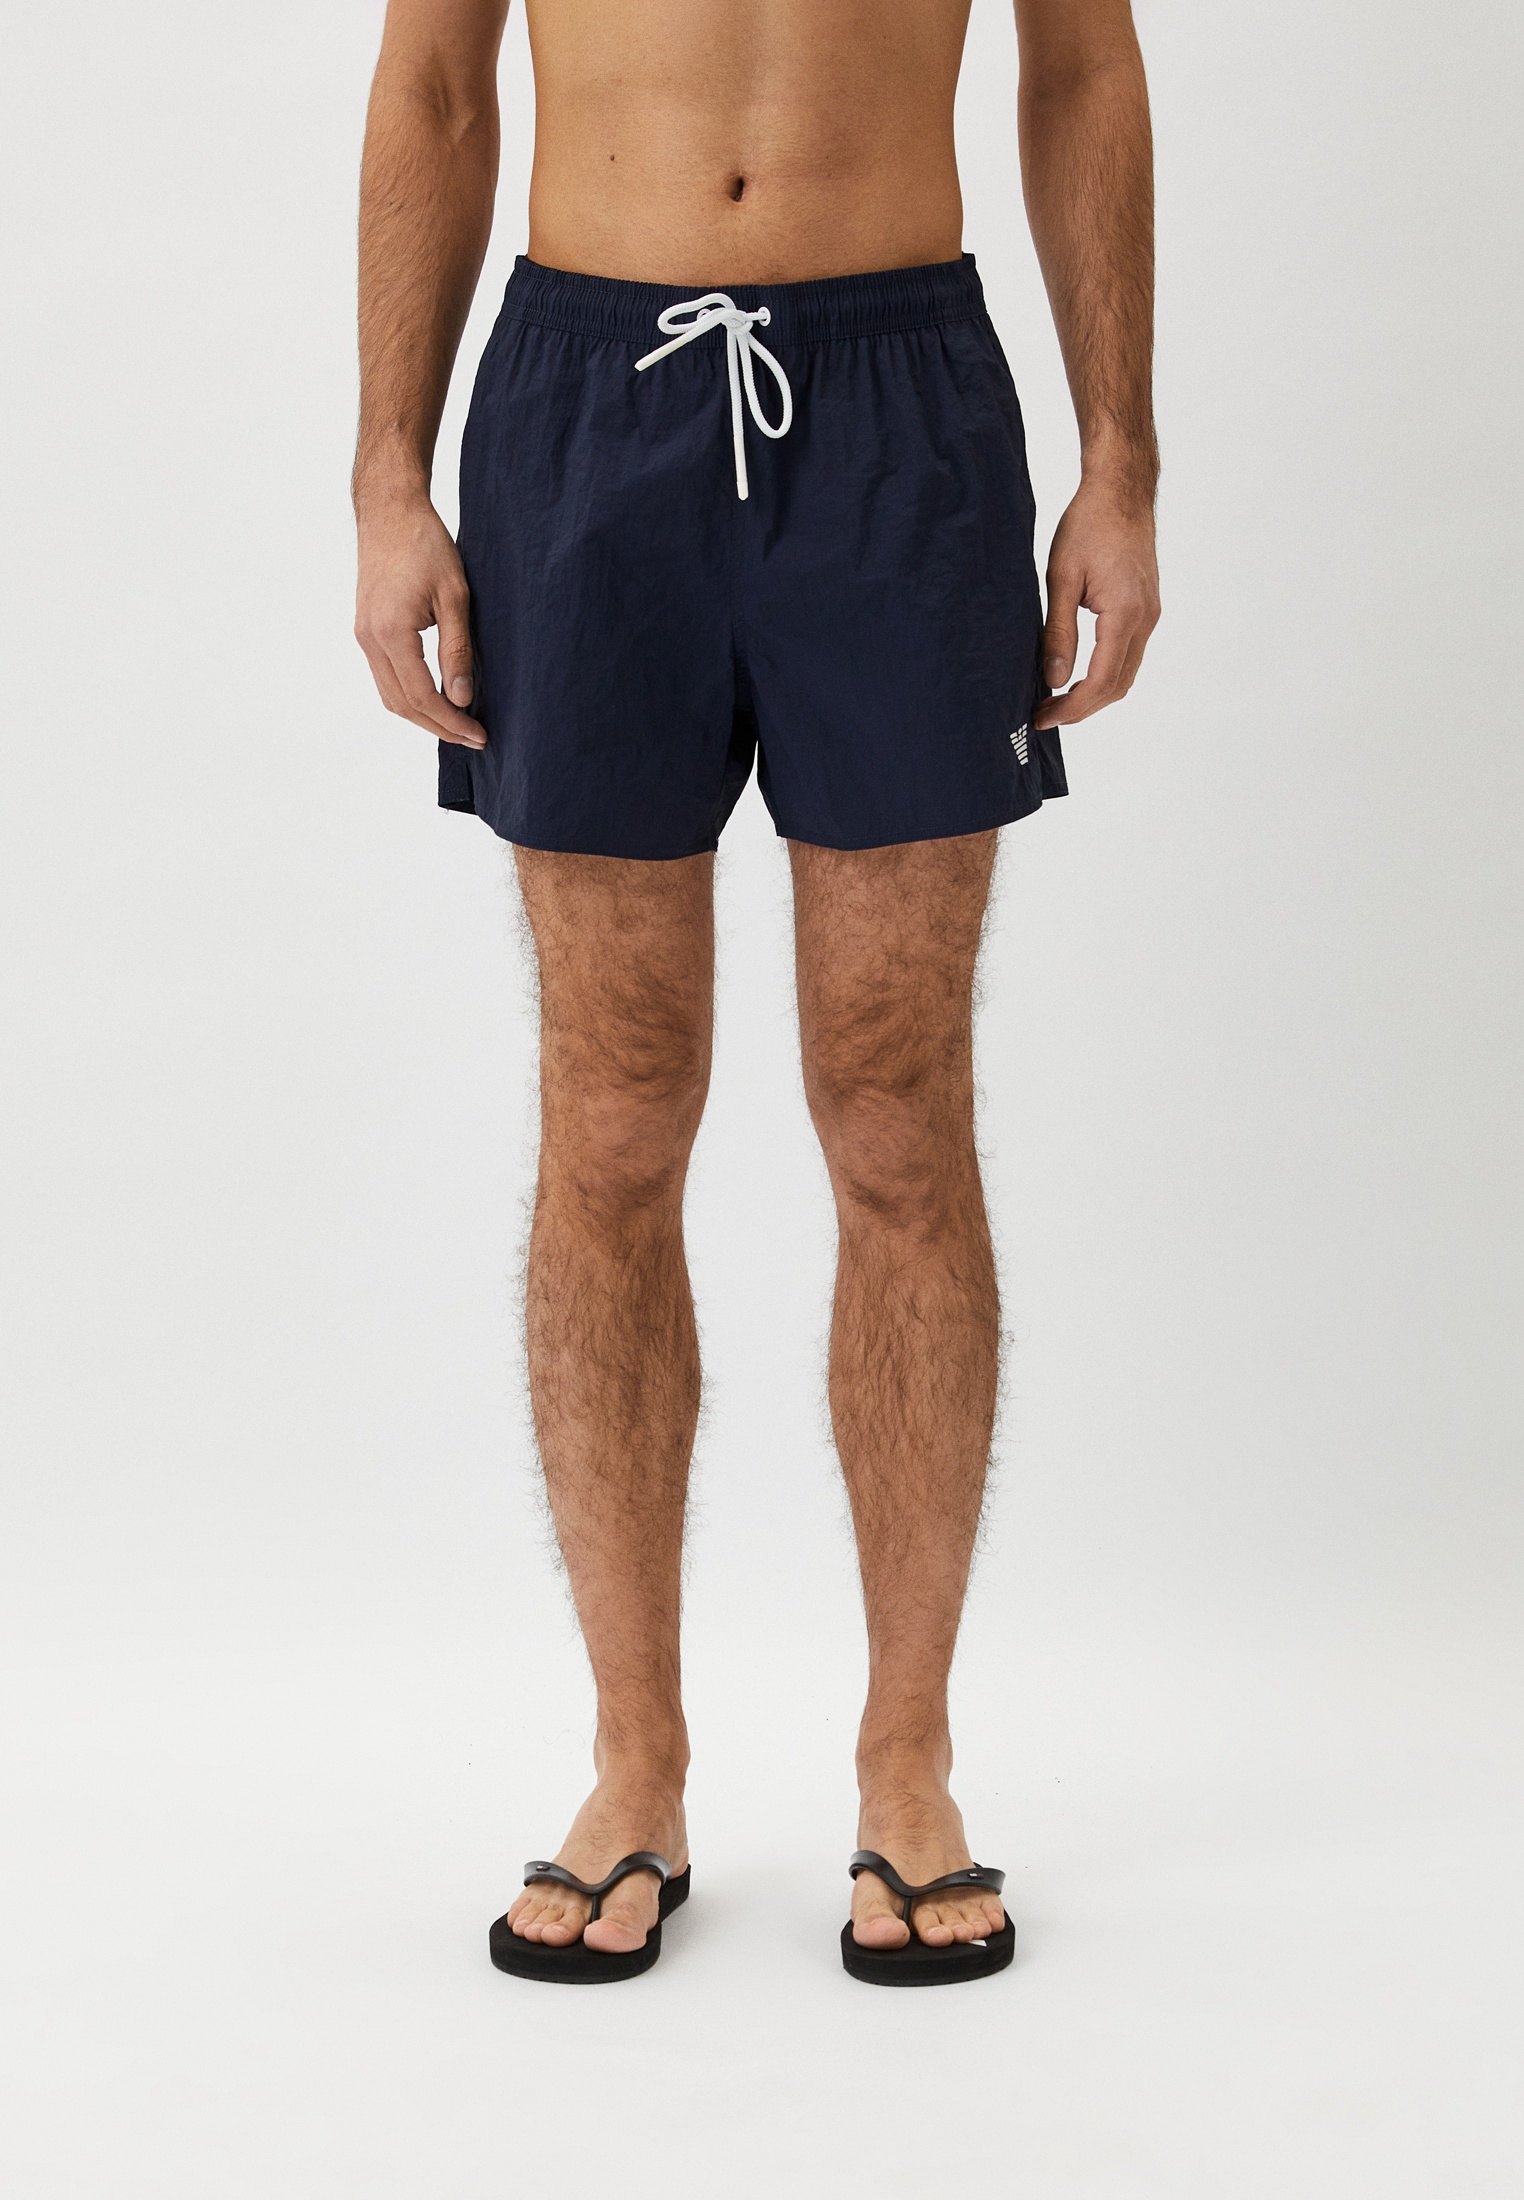 Мужские шорты для плавания Emporio Armani (Эмпорио Армани) 211756 4R422: изображение 1